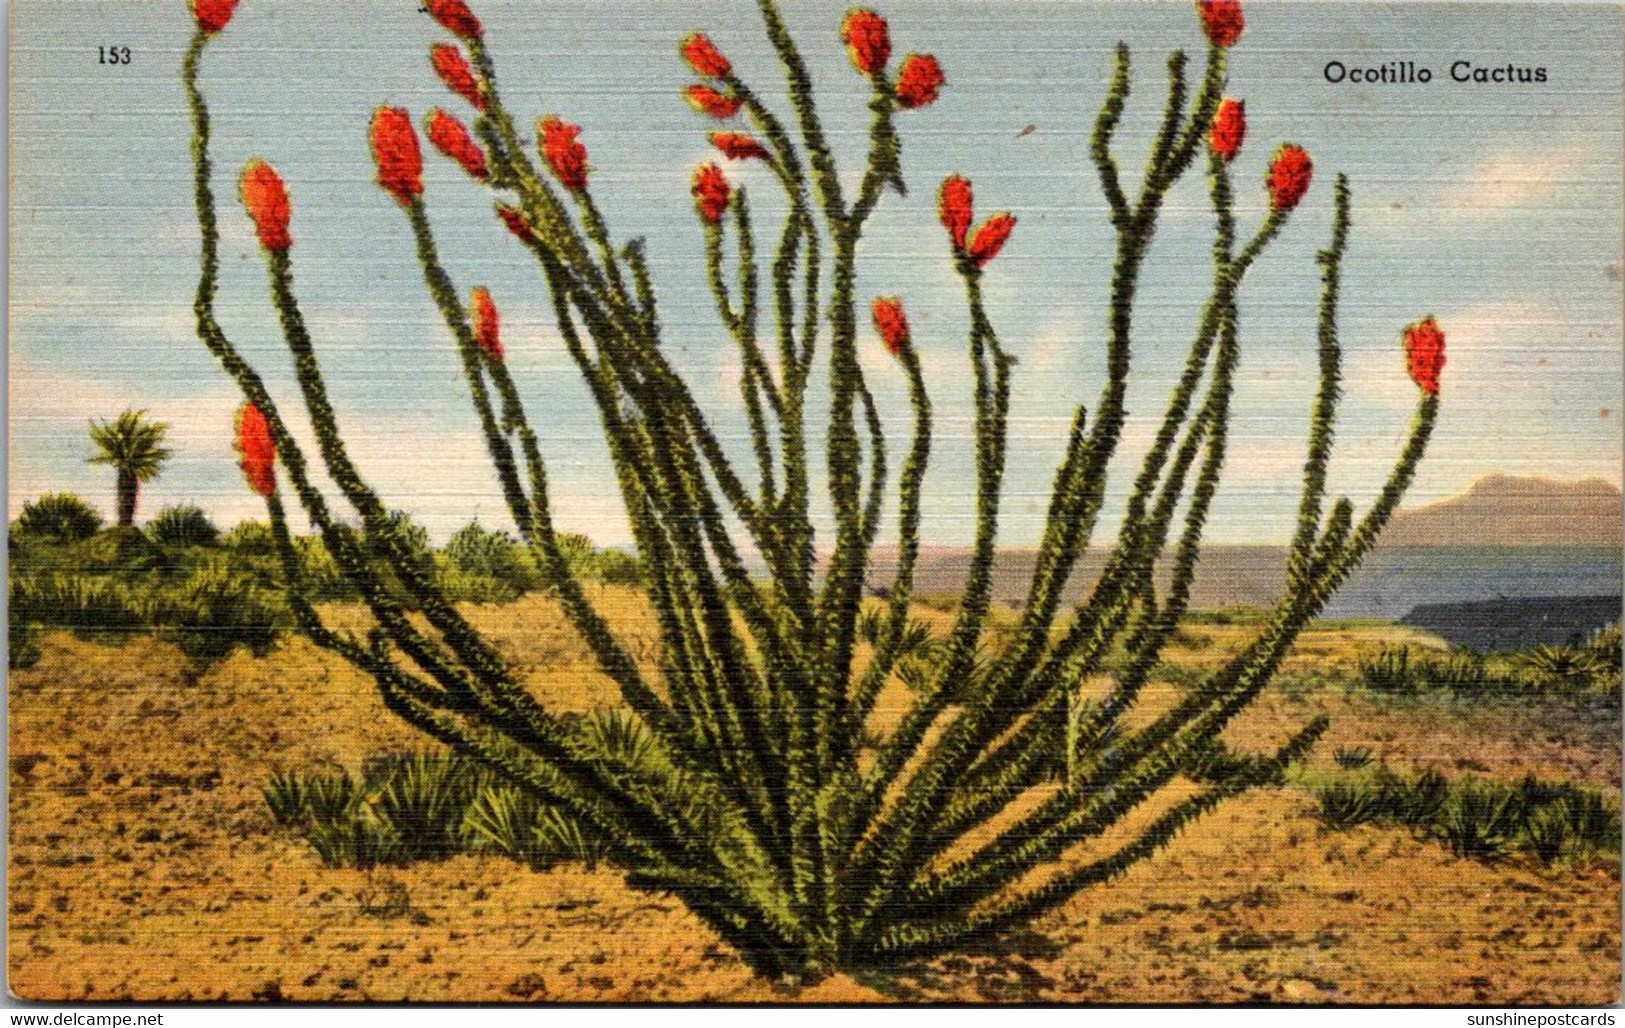 Cactus Ocotillp Cactus In Bloom - Cactus